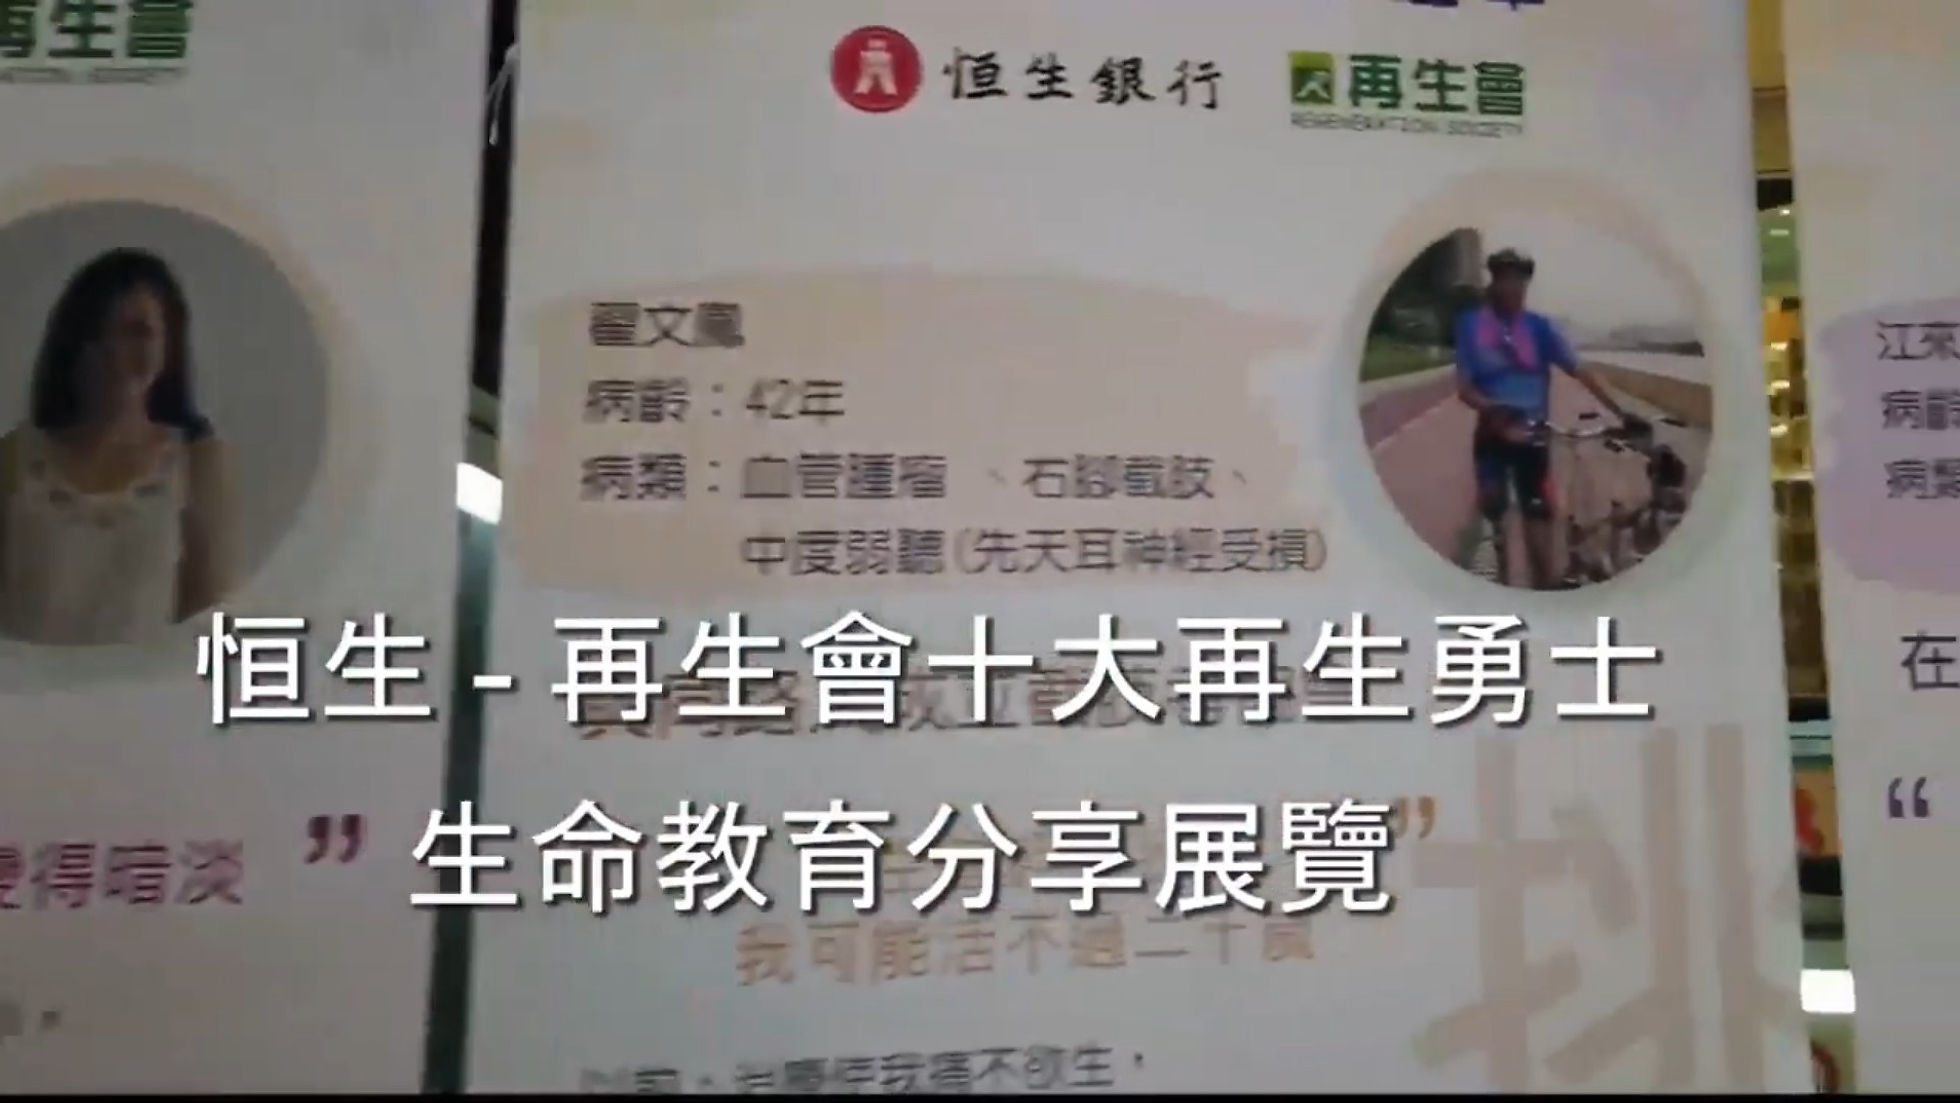 「 再生會十大再生勇士生命教育分享展覽」【再生會】#HKCSRTV #公益電視_pODs611Fb-A_1080p